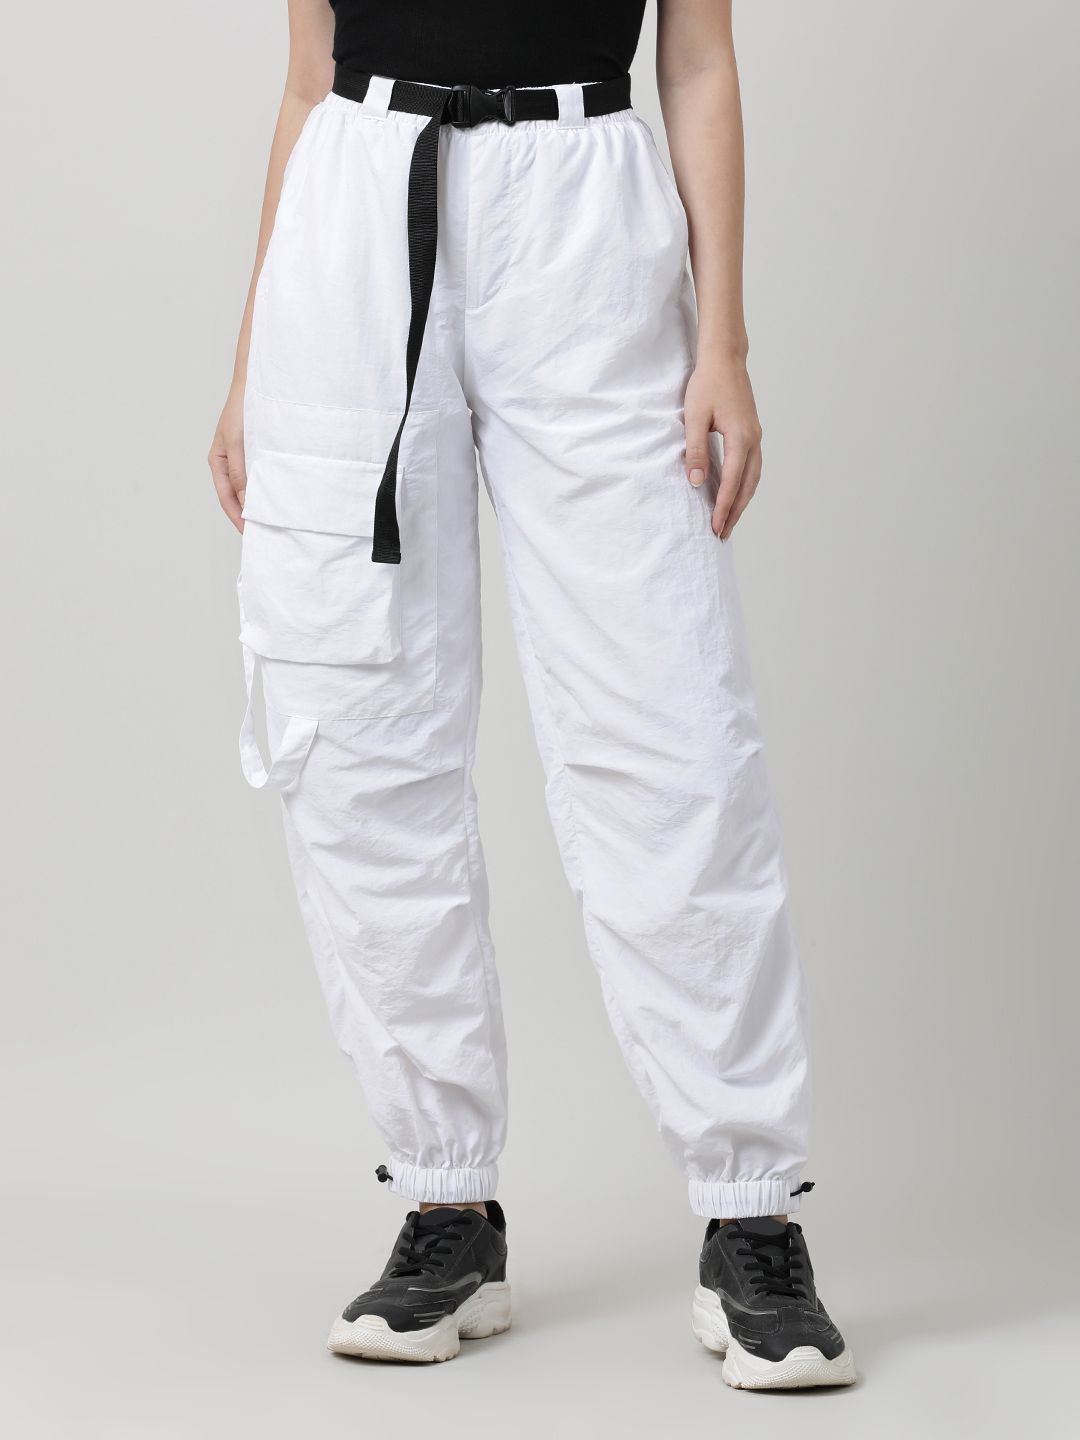     			Bene Kleed White Nylon Loose Women's Cargo Pants ( Pack of 1 )